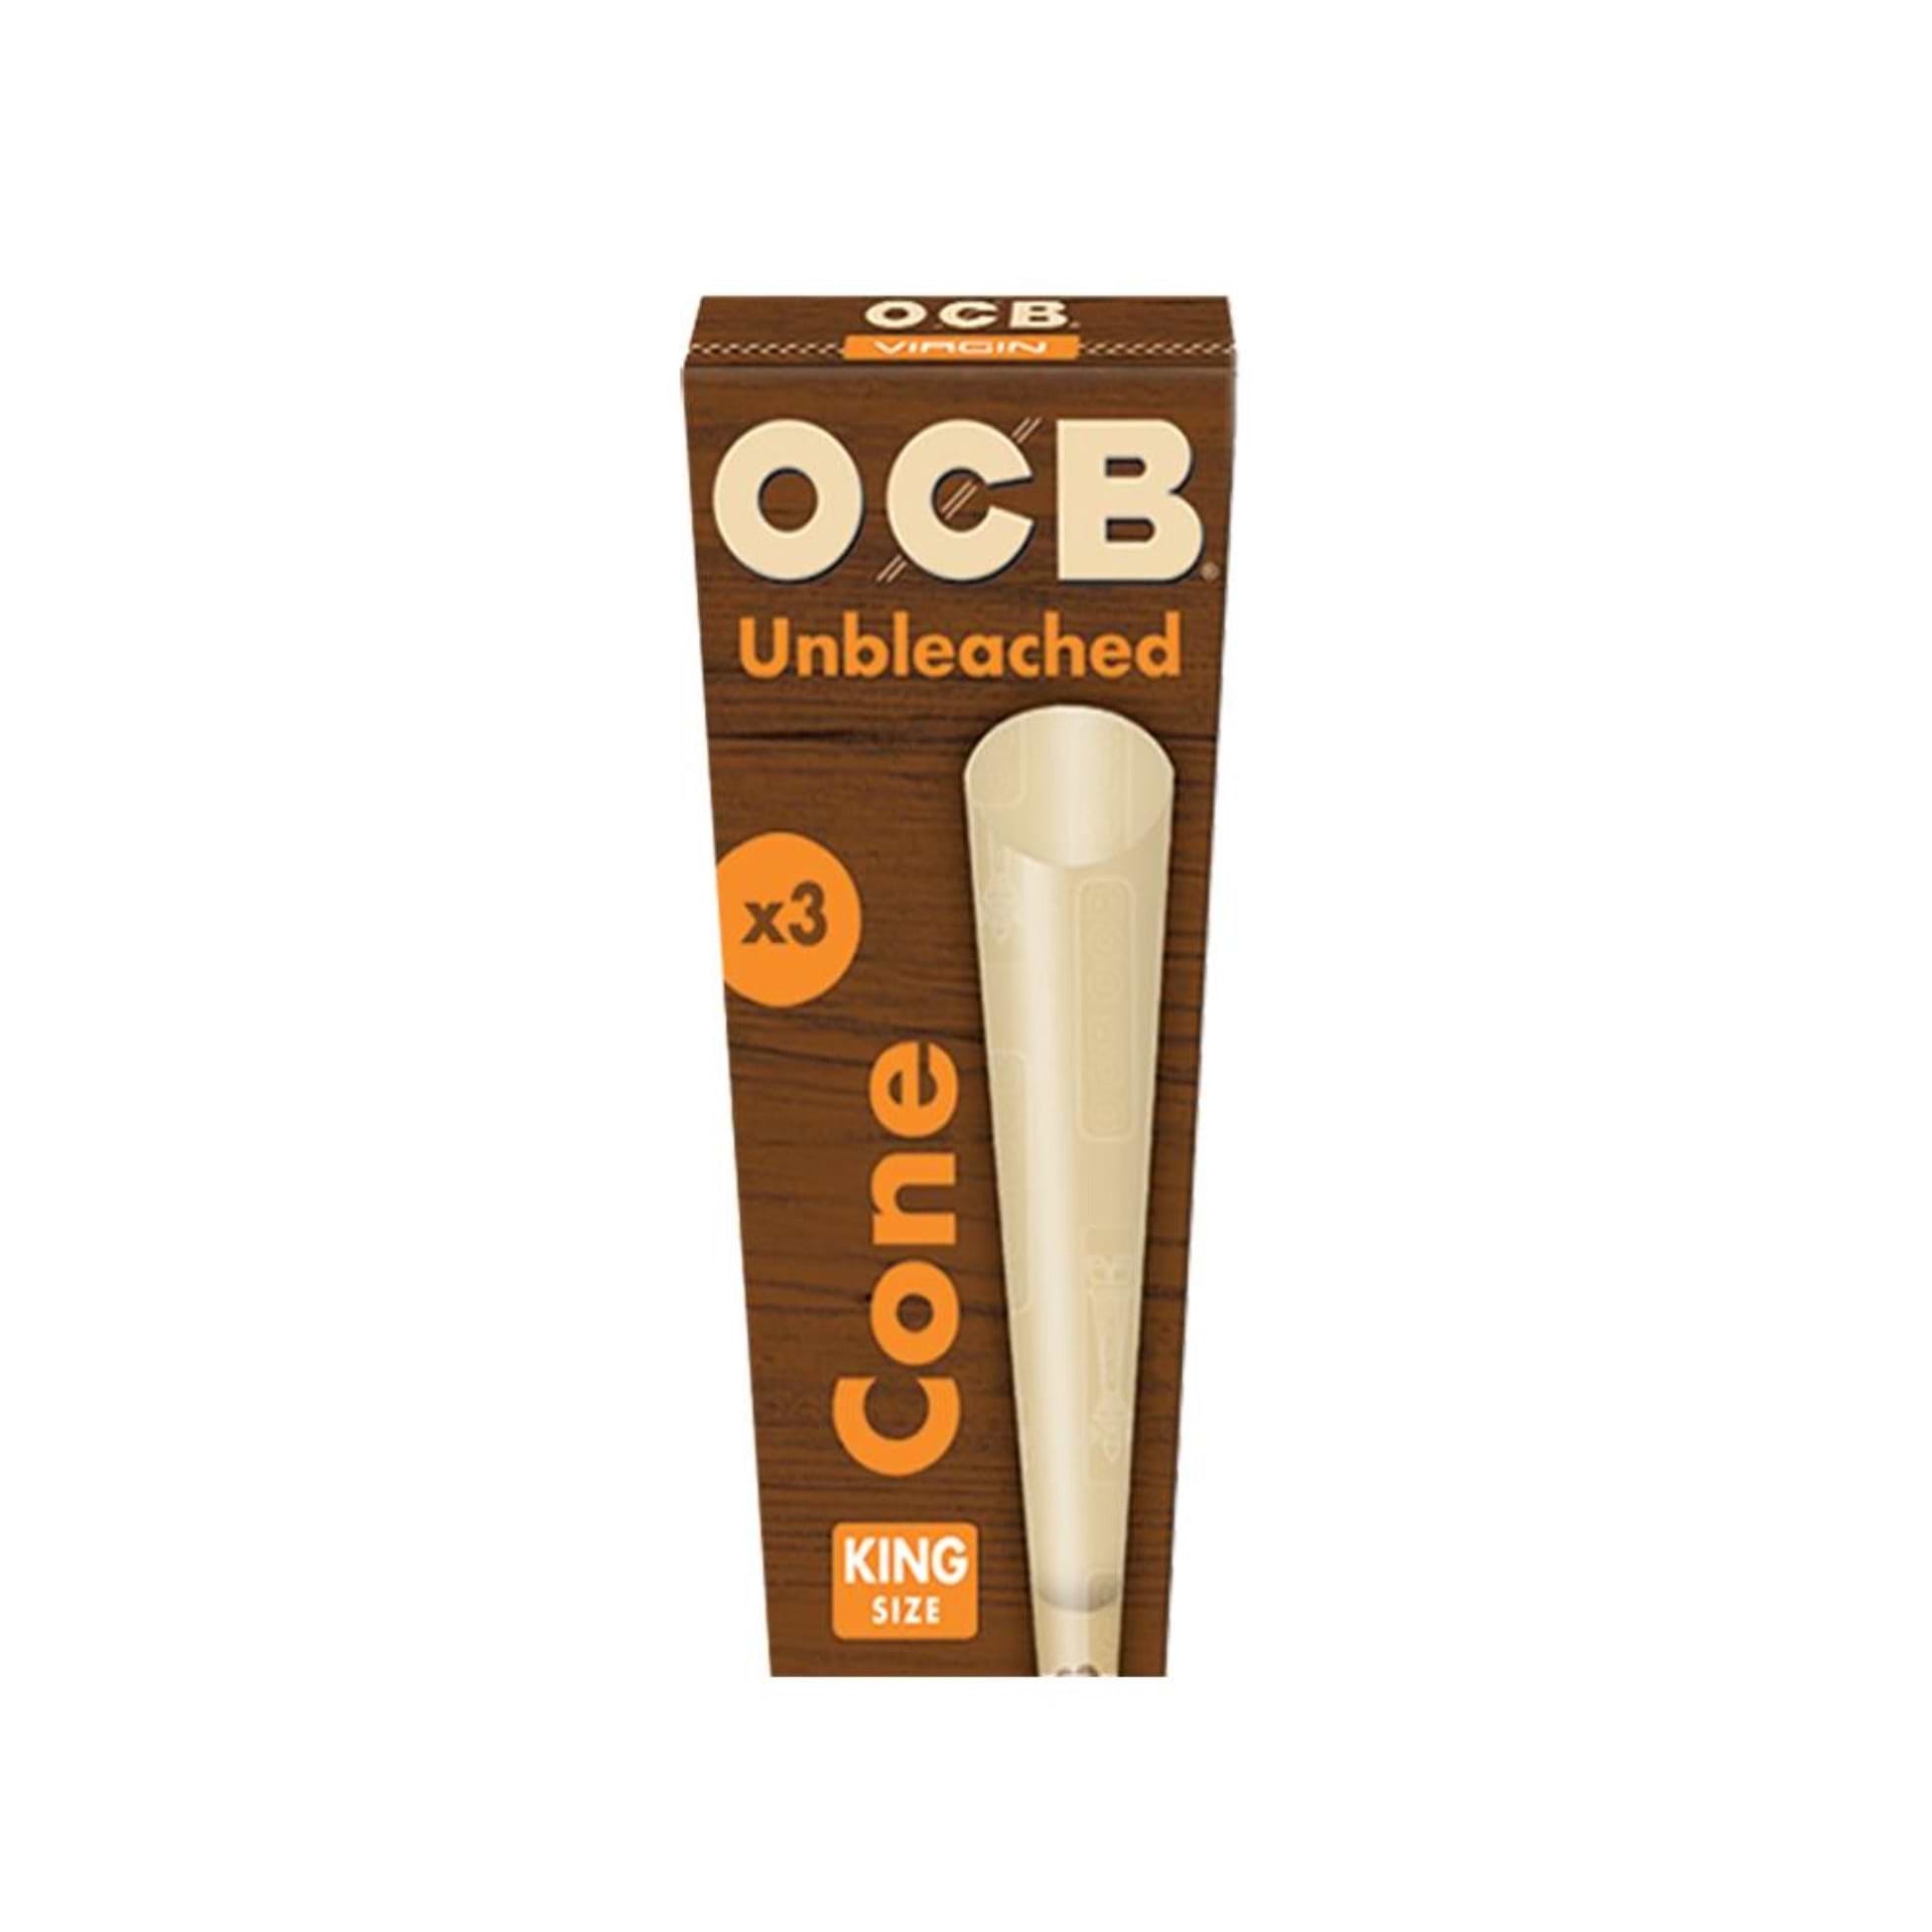 OCB Unbleached Virgin Cones King (3 Pack)